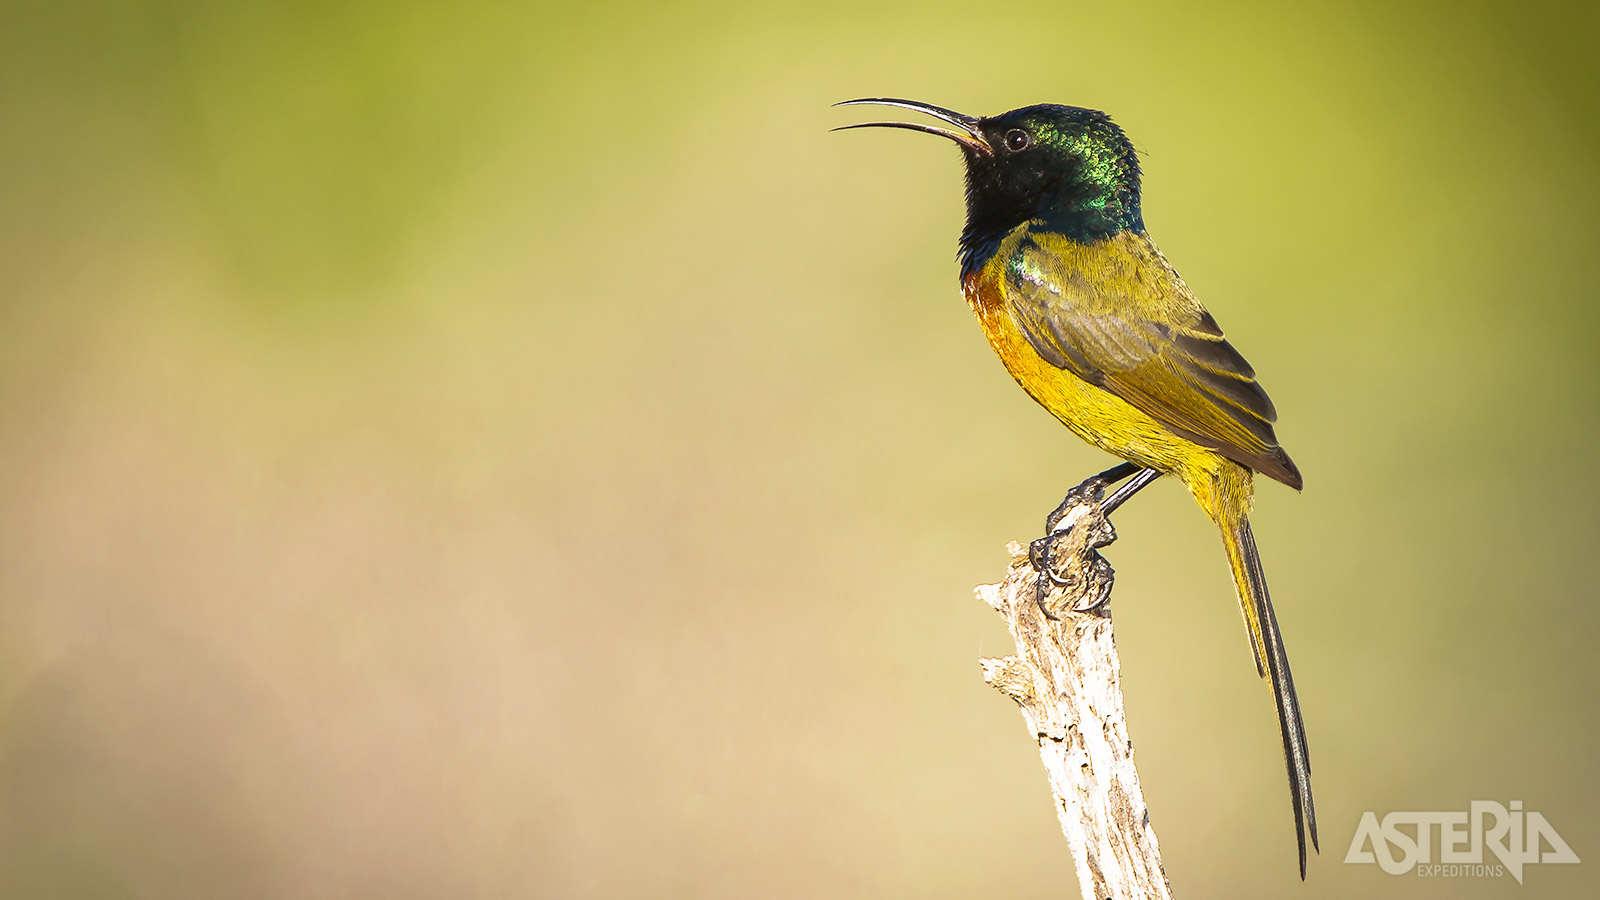 Diepe ravijnen, ongerepte groene wouden en een uitbundig vogelleven kenmerken het Tsitsikamma Nationaal Park